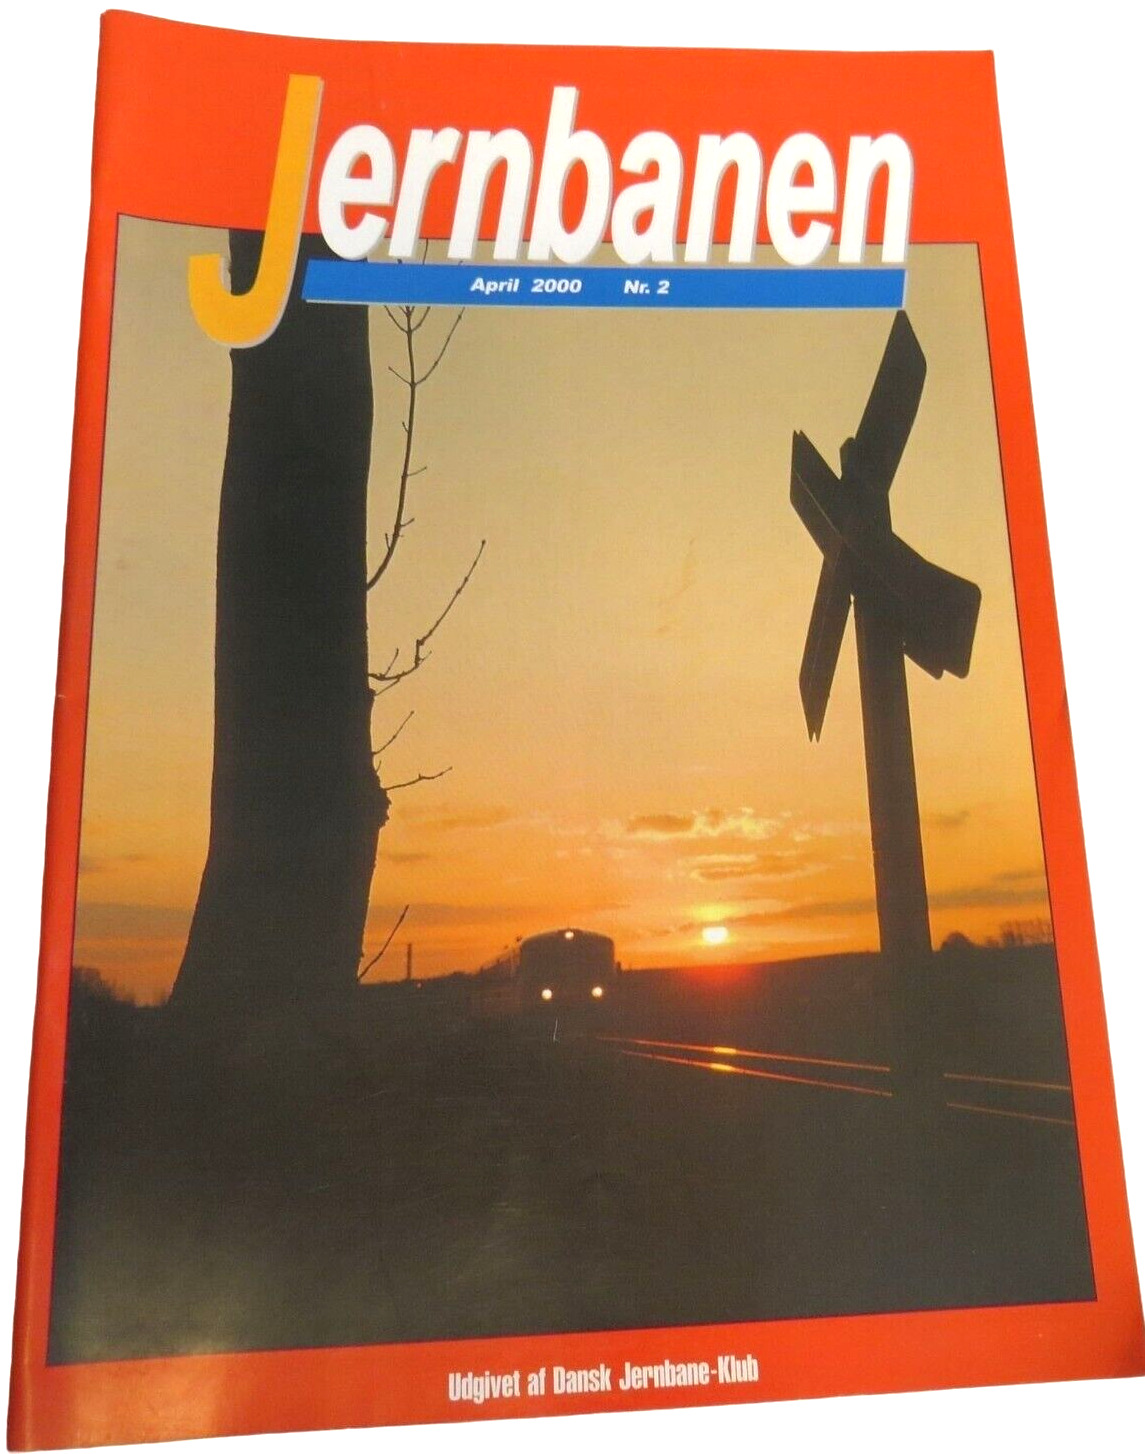 Jernbanen (The Railway) Norwegian Railroad Train Magazine April 2000